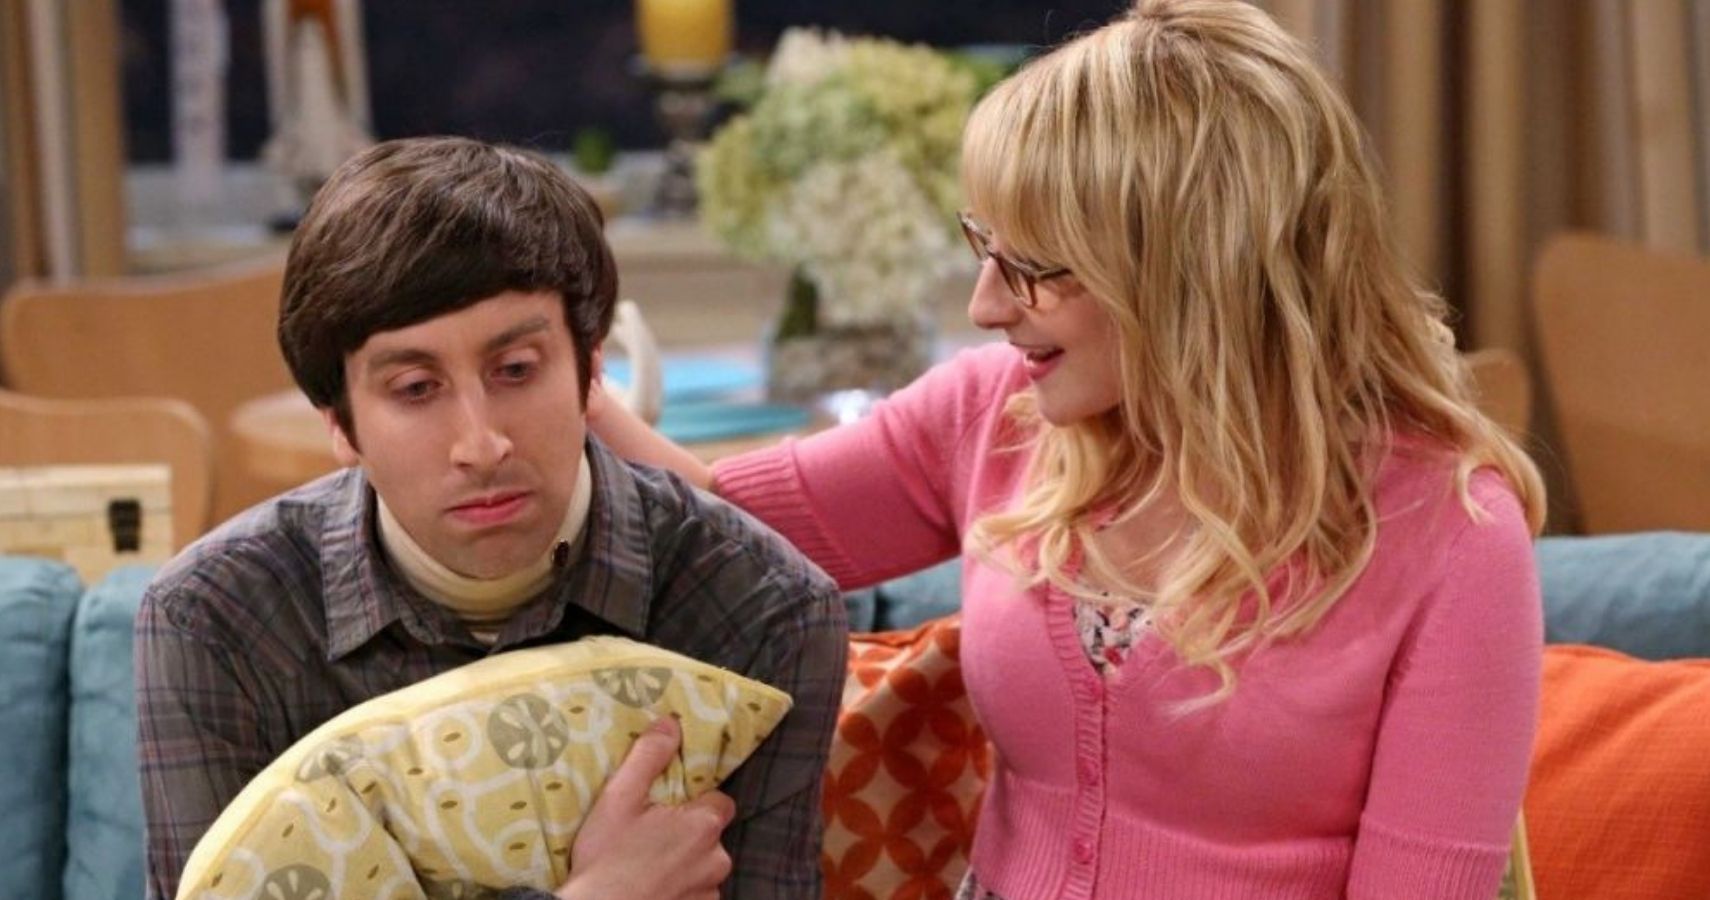 The Big Bang Theory Howard Wolowitz